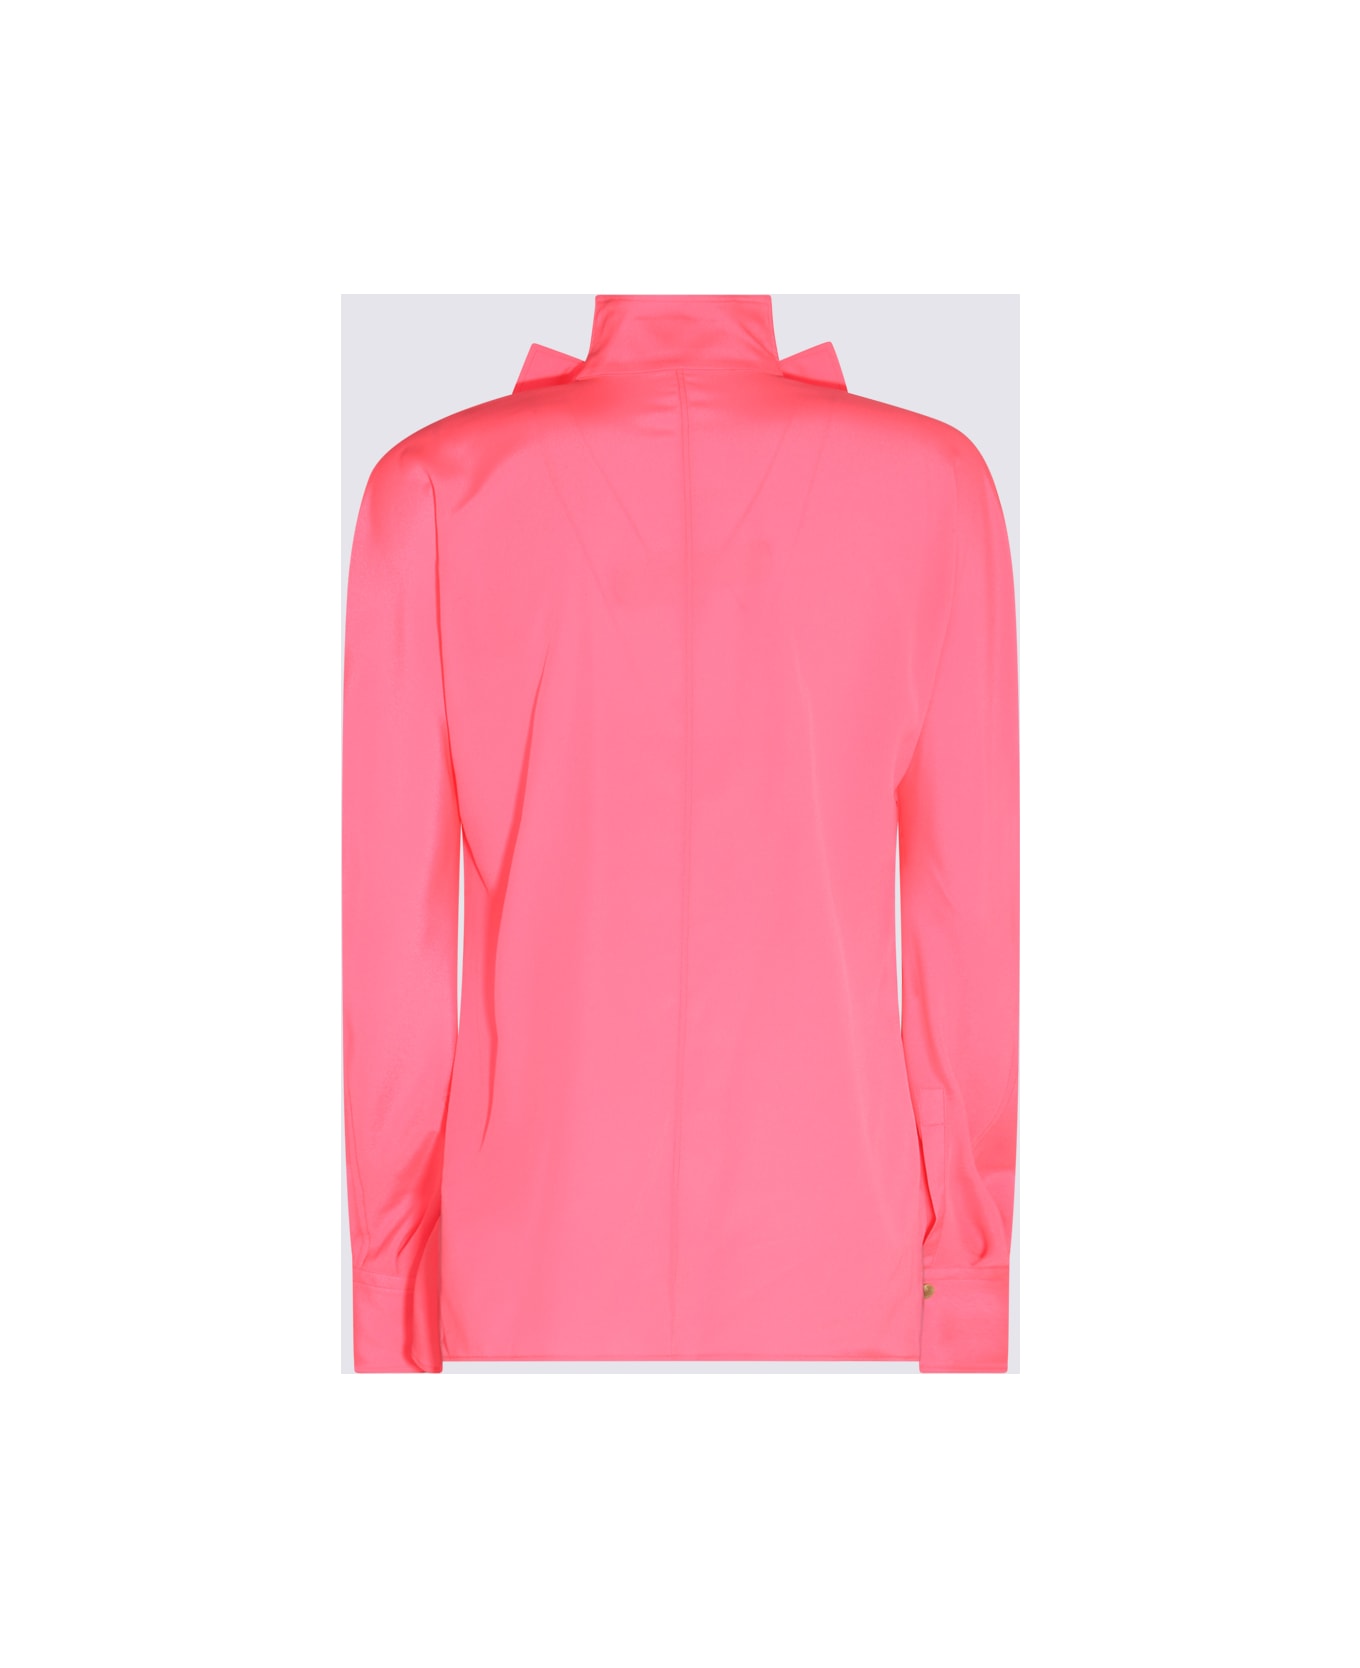 Vivienne Westwood Pink Neon Viscose Stretch Shirt - PINK NEON